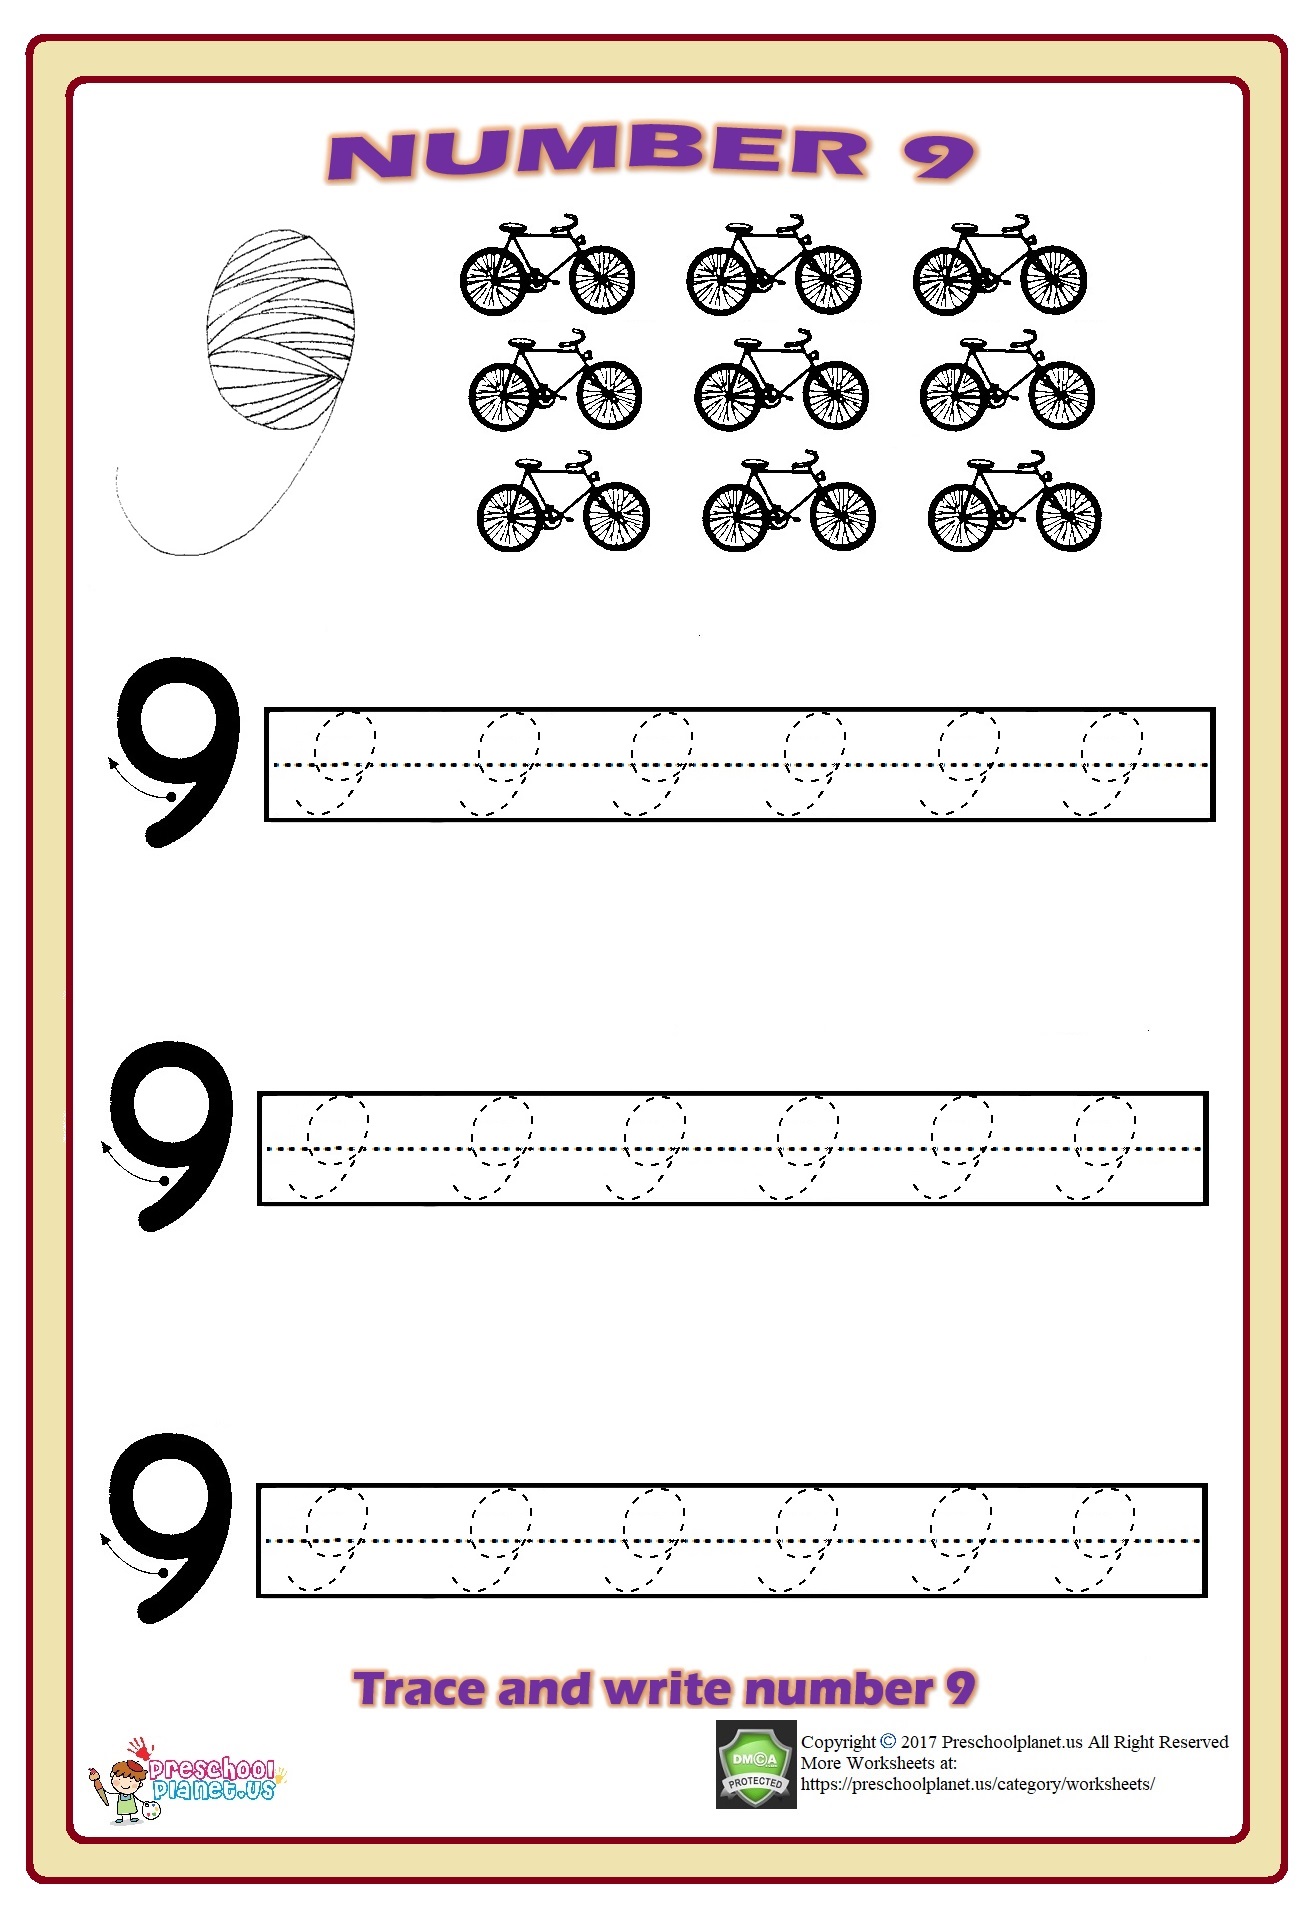 Number 9 Trace Worksheet Preschoolplanet